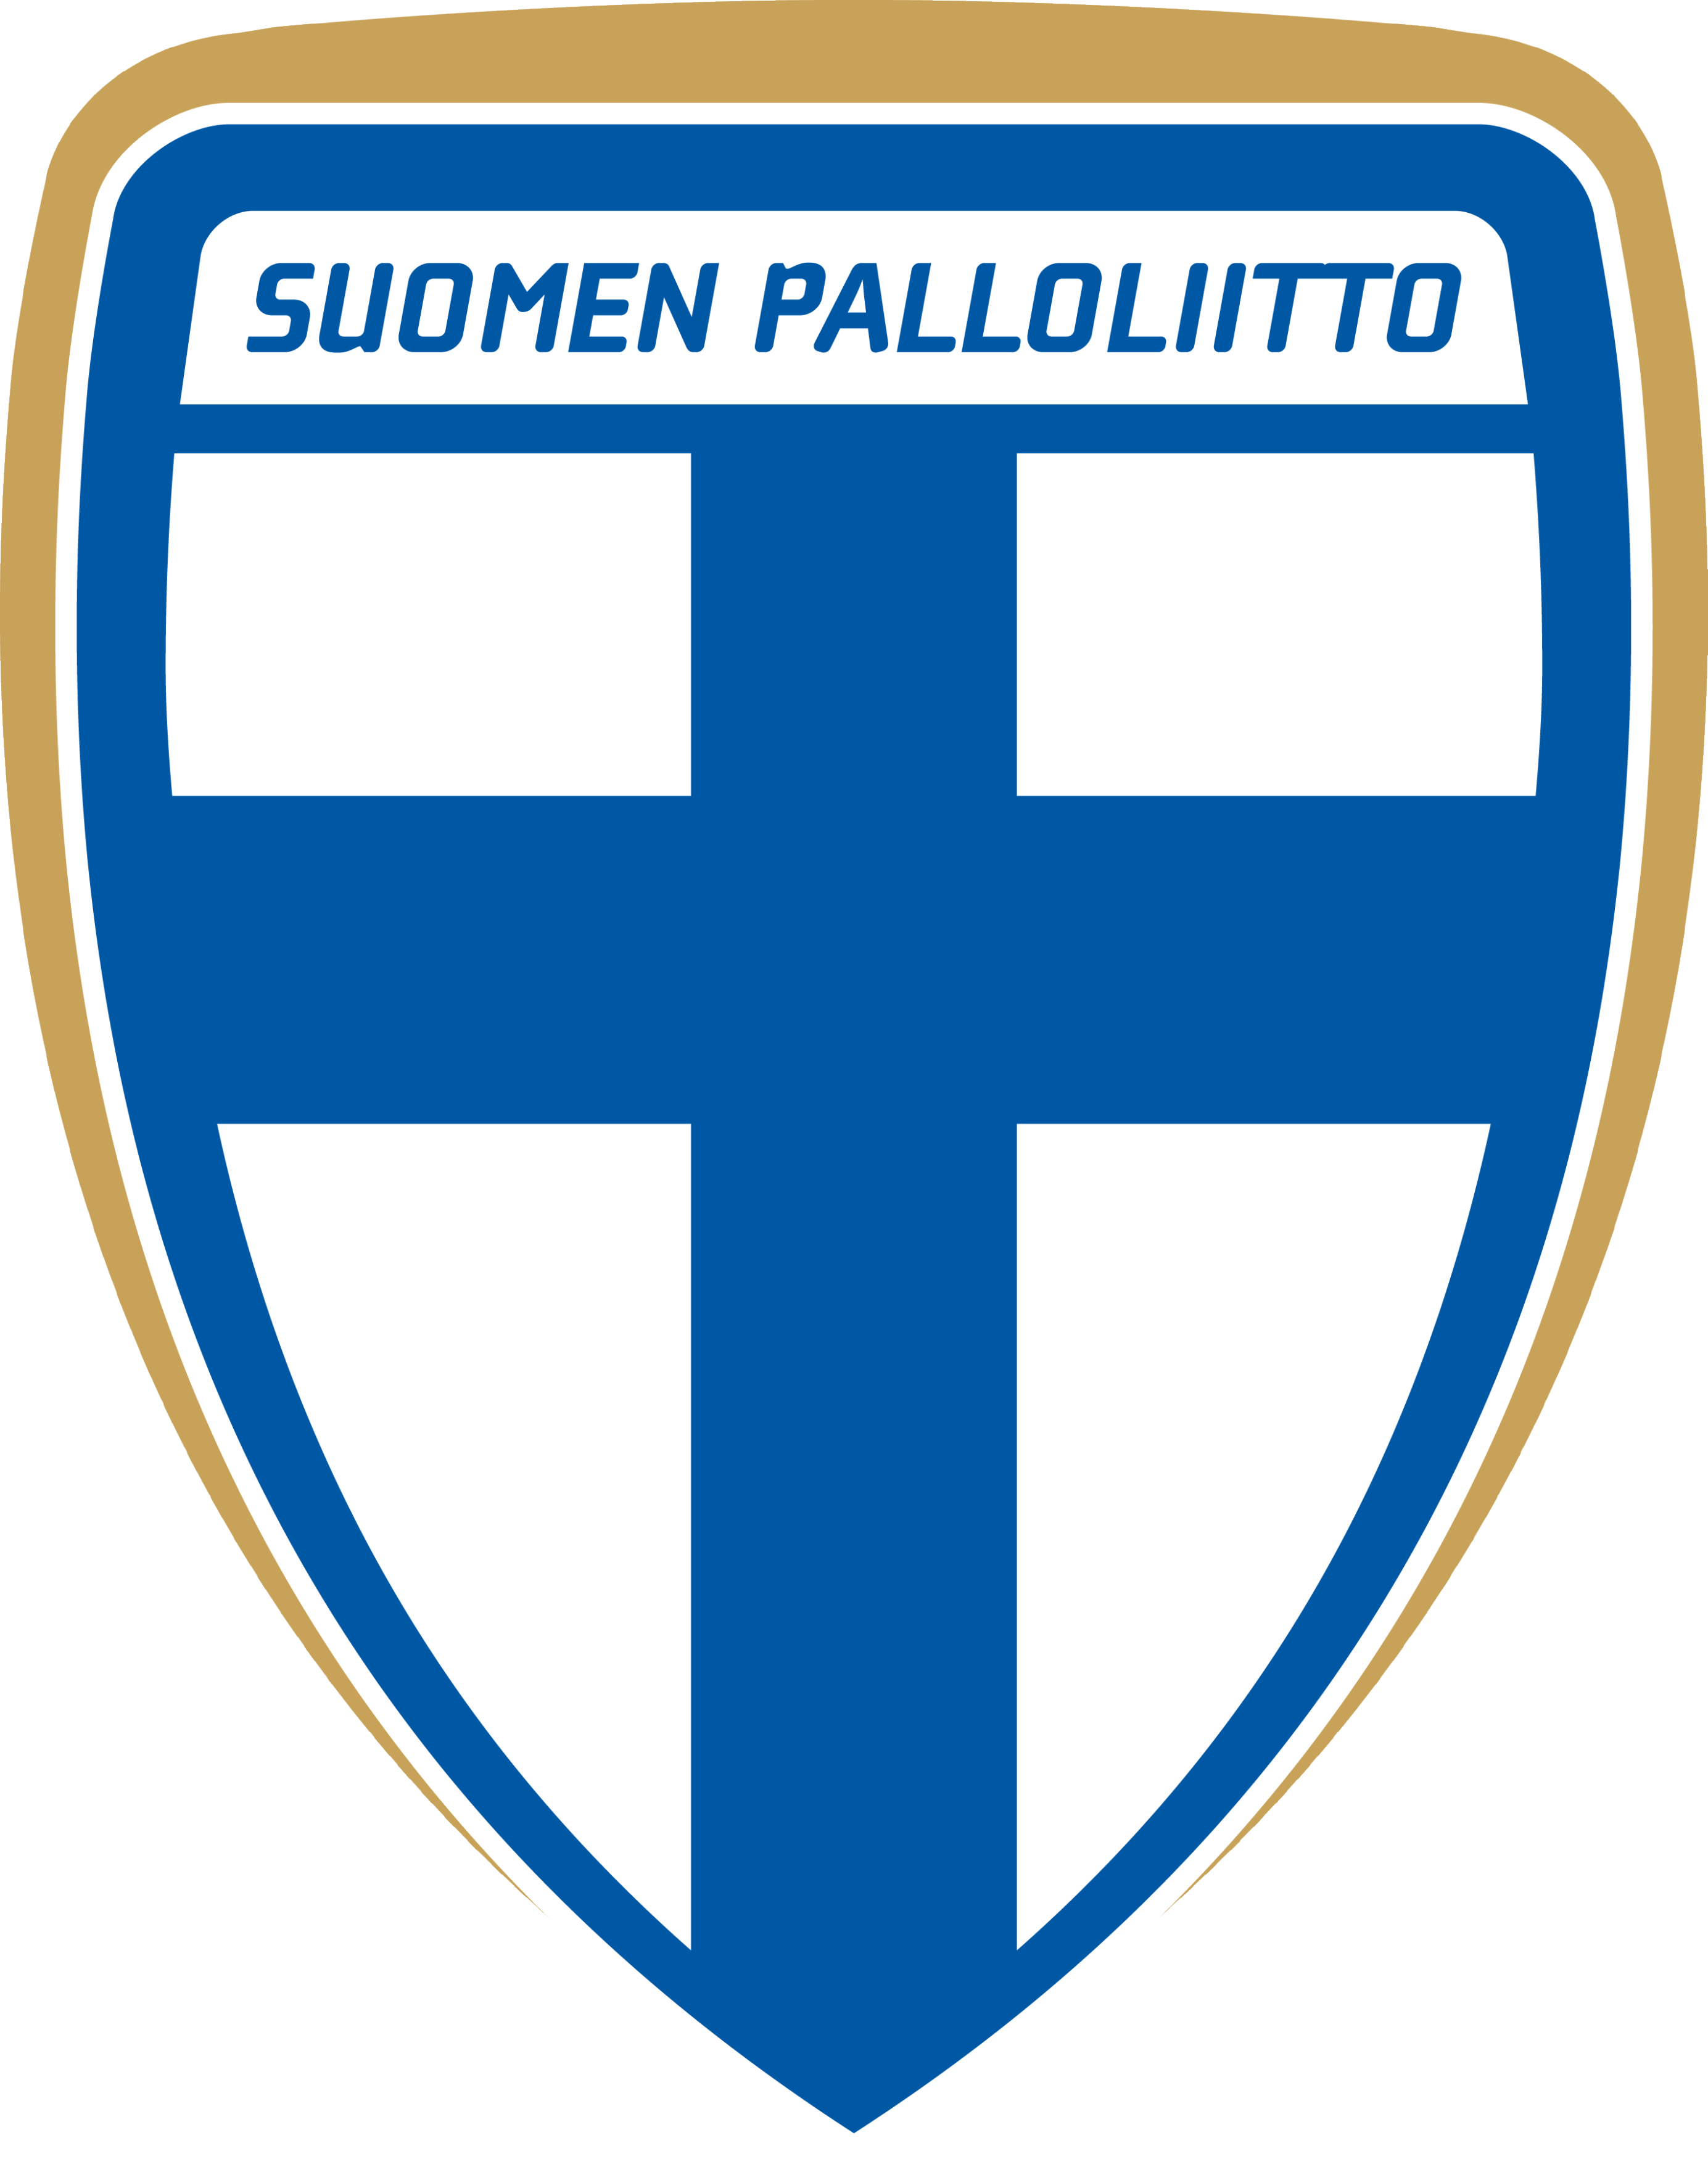 芬蘭足球協會